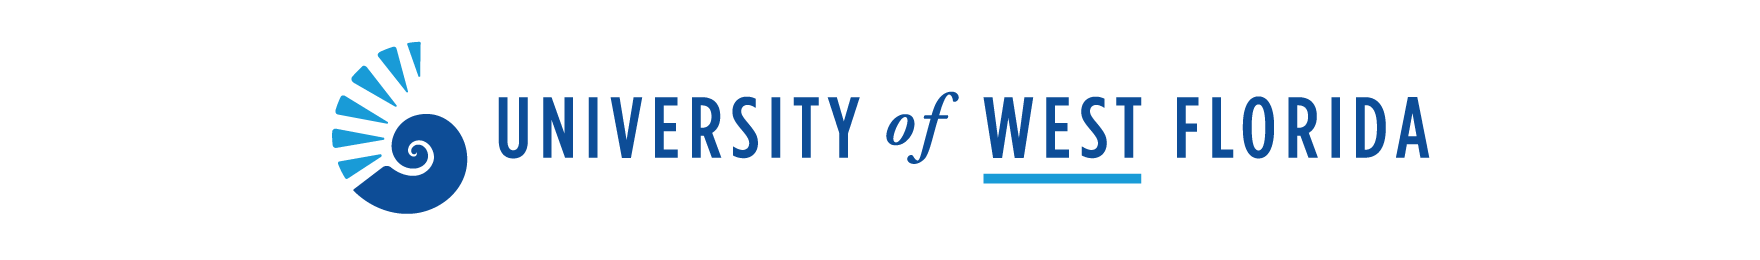 University of West Florida Logo - Primary Logo | University of West Florida